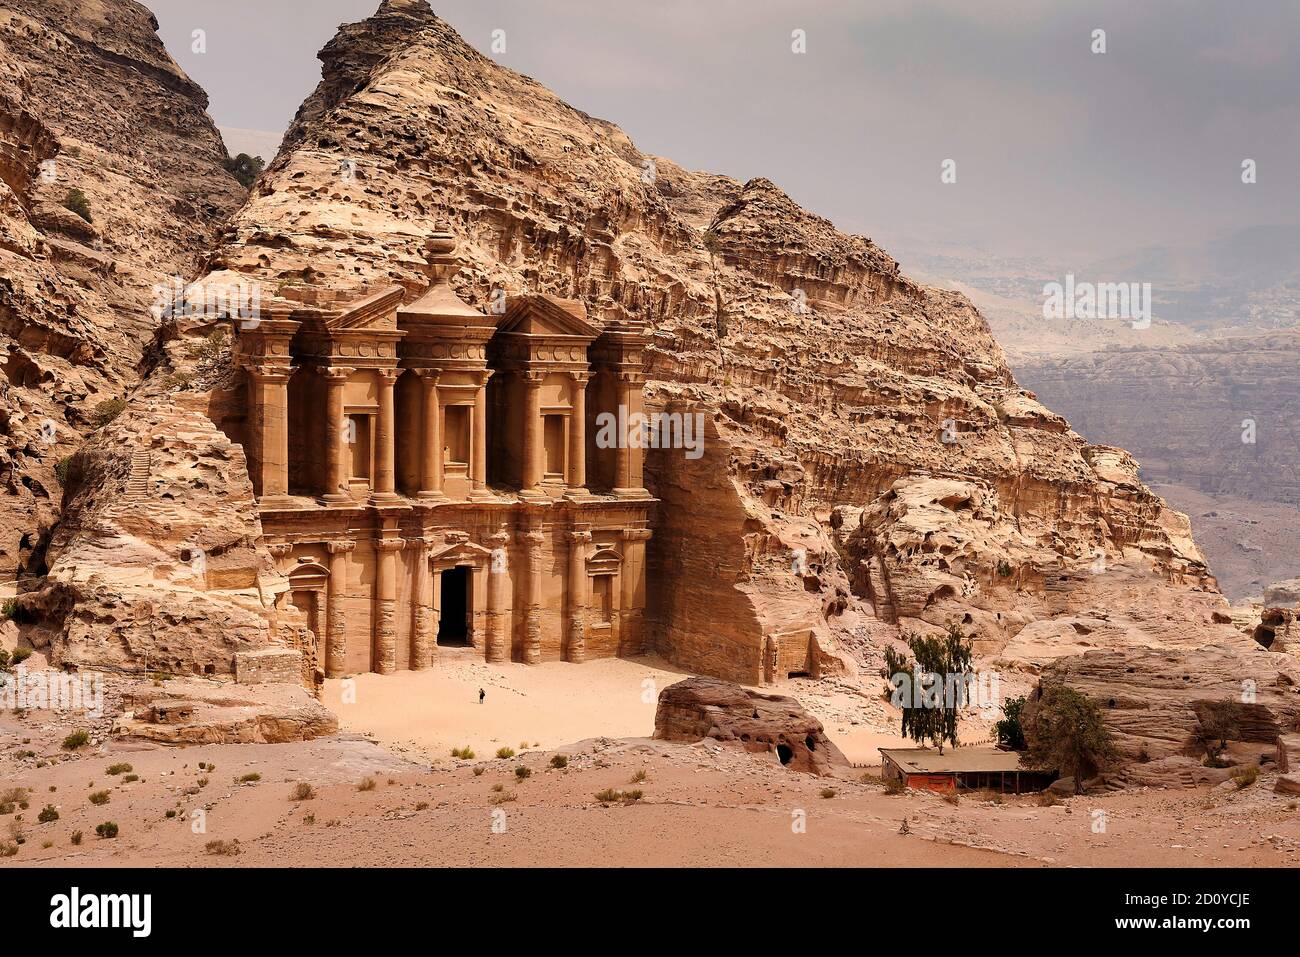 El Deir - le monastère de Petra, en Jordanie, avec une personne debout devant. Banque D'Images